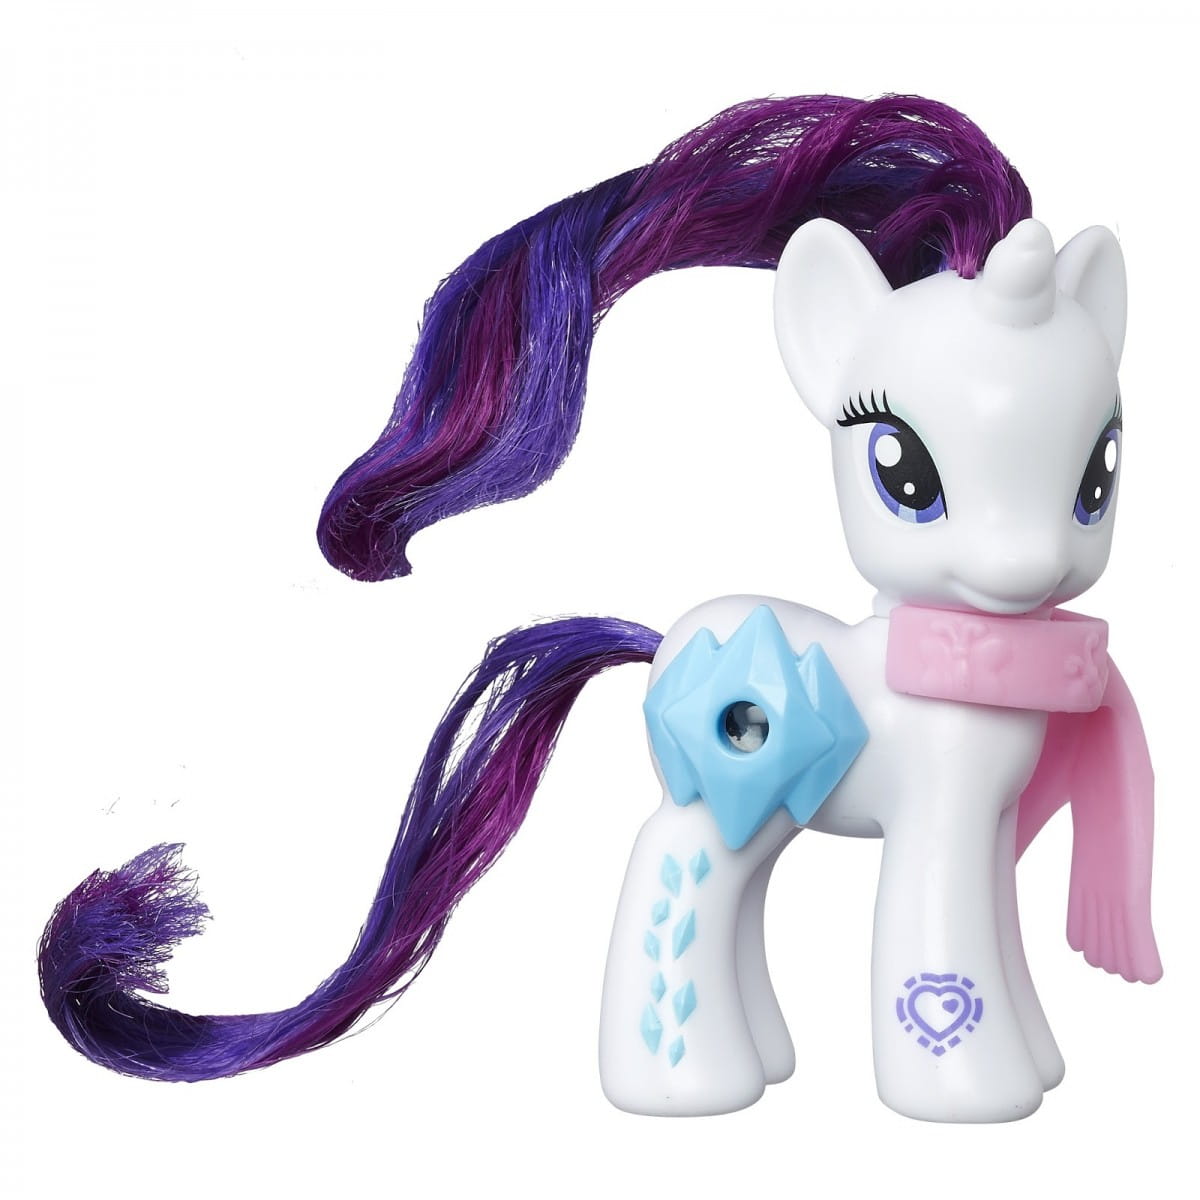    My Little Pony     -  (Hasbro)